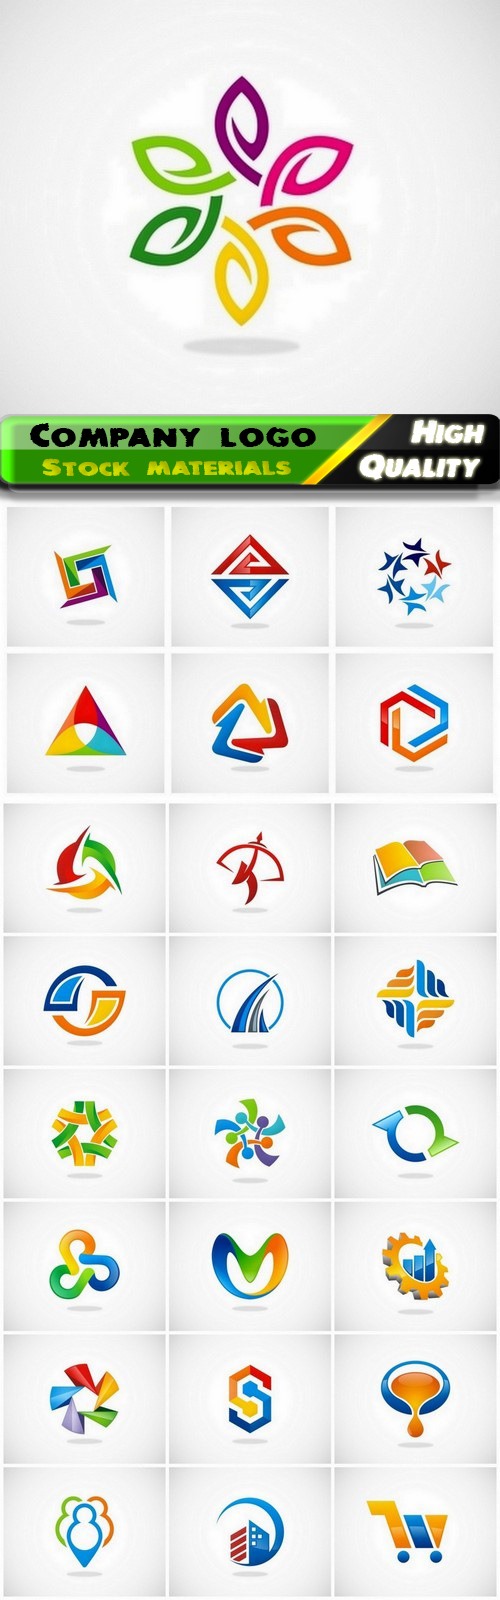 Business company badge logotype and logo emblem 22 - 25 Eps